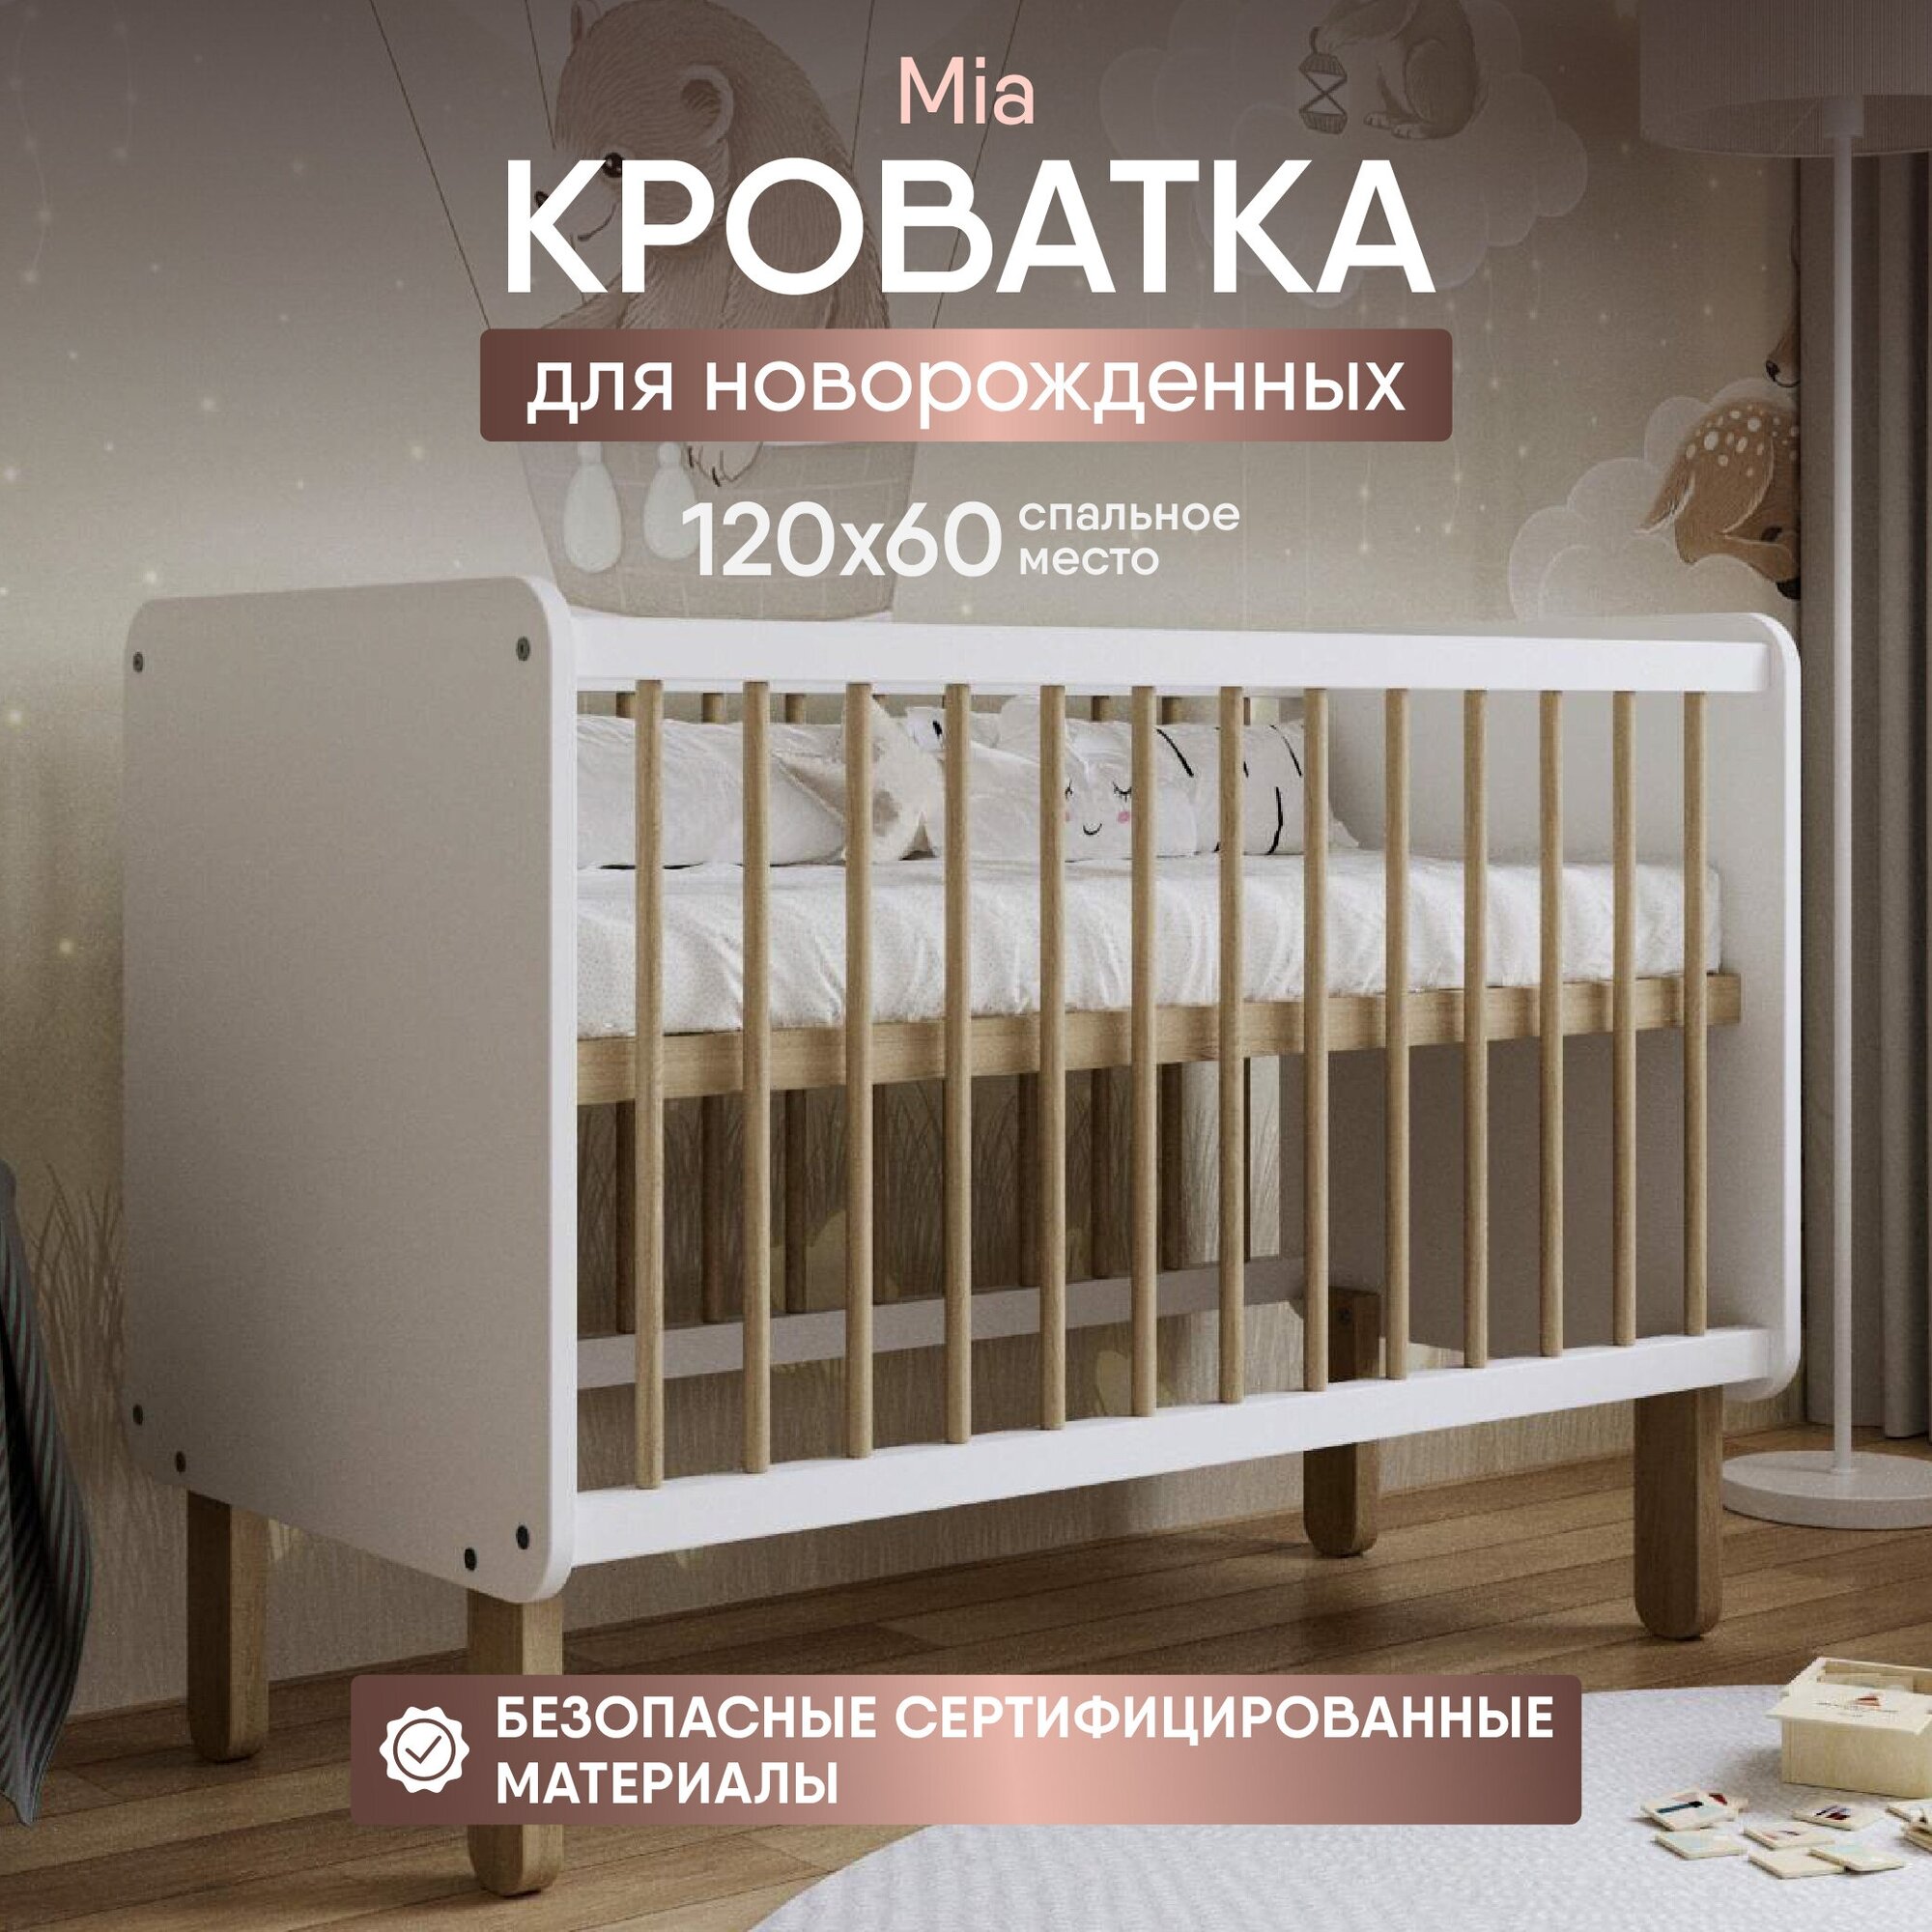 Кроватка детская Mia без маятника для новорожденных от 0 до 4х лет спальное место 120х60 см